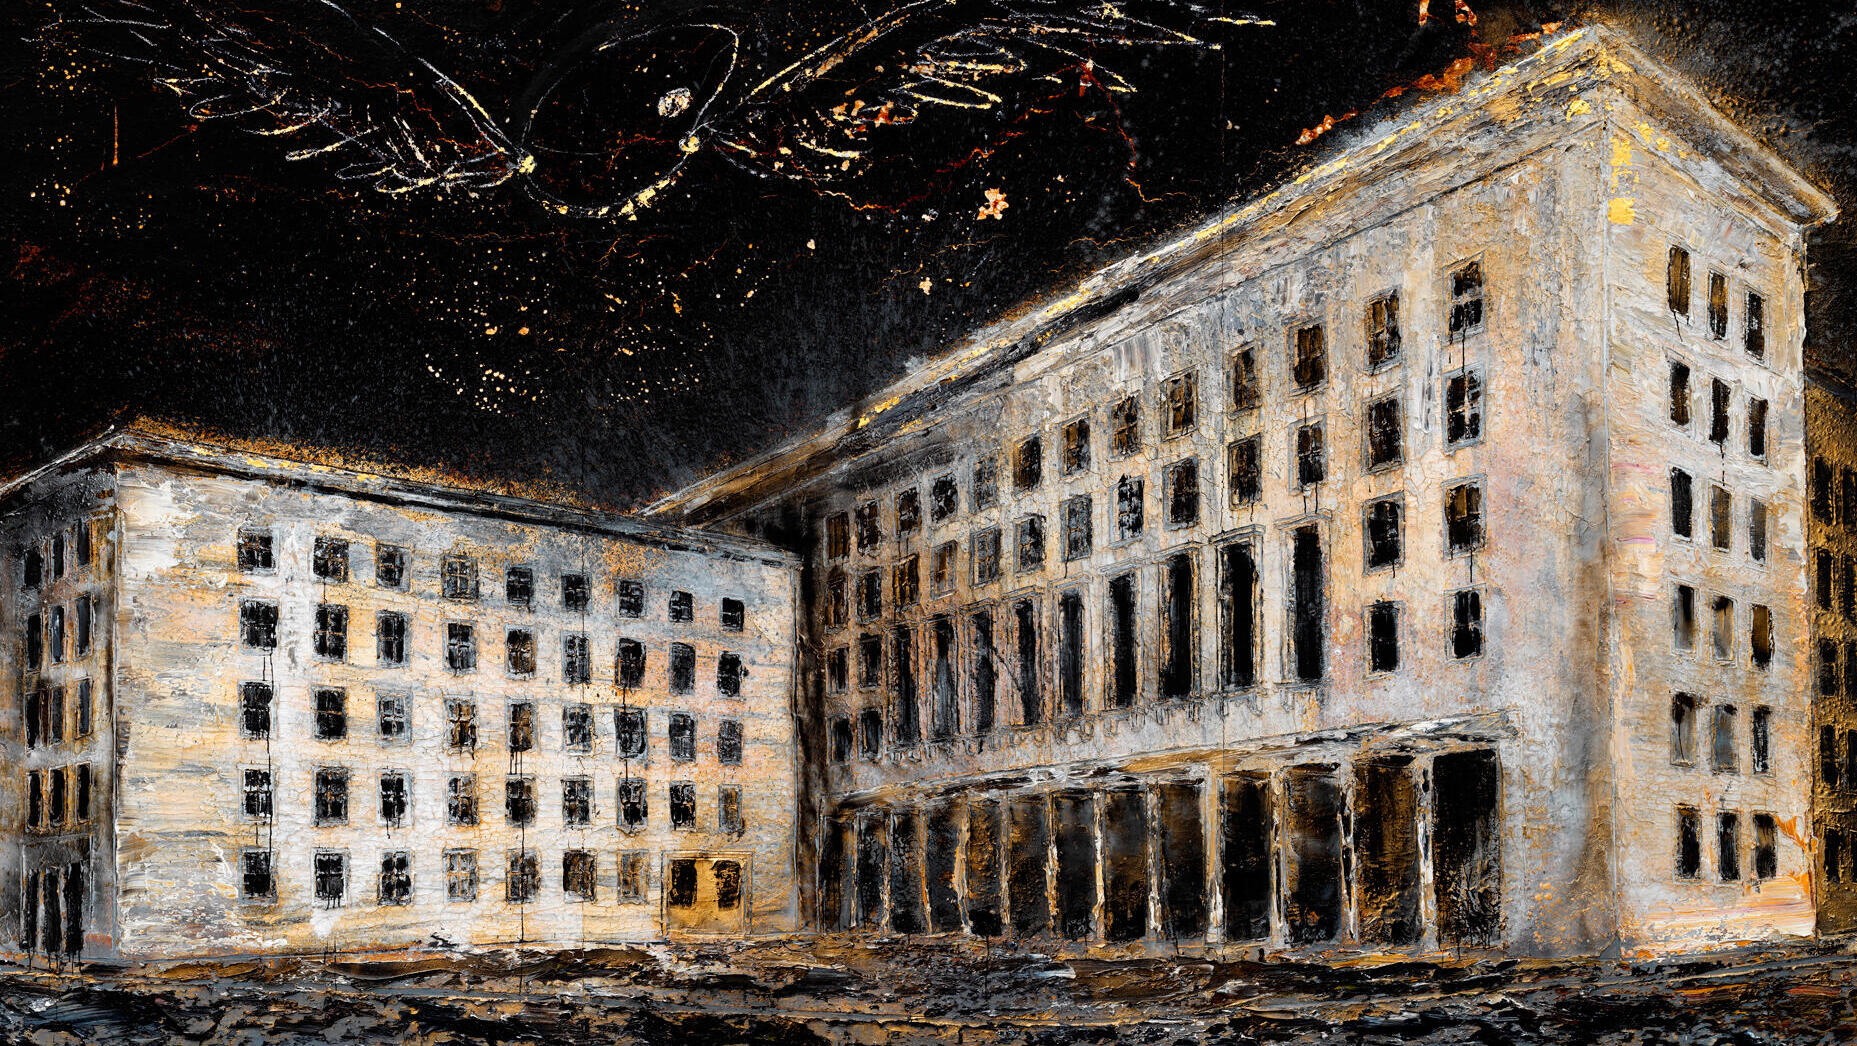 פנאי סטודיו הצייר מתוך אקסודוס ציורי ענק של מבנים וחורבות